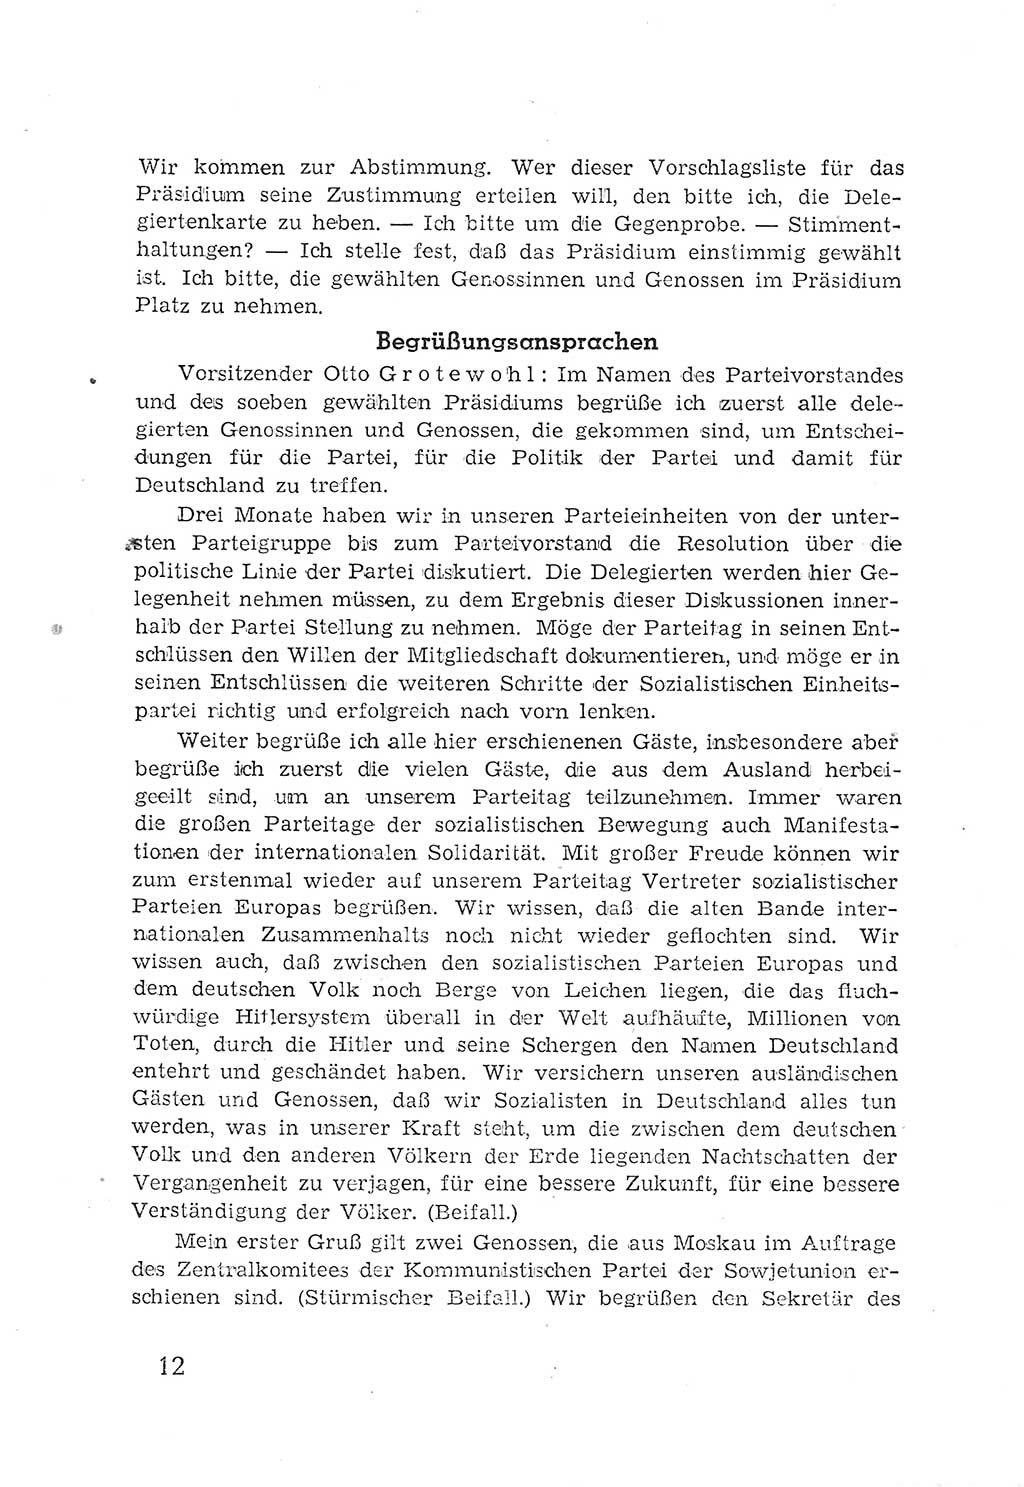 Protokoll der Verhandlungen des 2. Parteitages der Sozialistischen Einheitspartei Deutschlands (SED) [Sowjetische Besatzungszone (SBZ) Deutschlands] 1947, Seite 12 (Prot. Verh. 2. PT SED SBZ Dtl. 1947, S. 12)